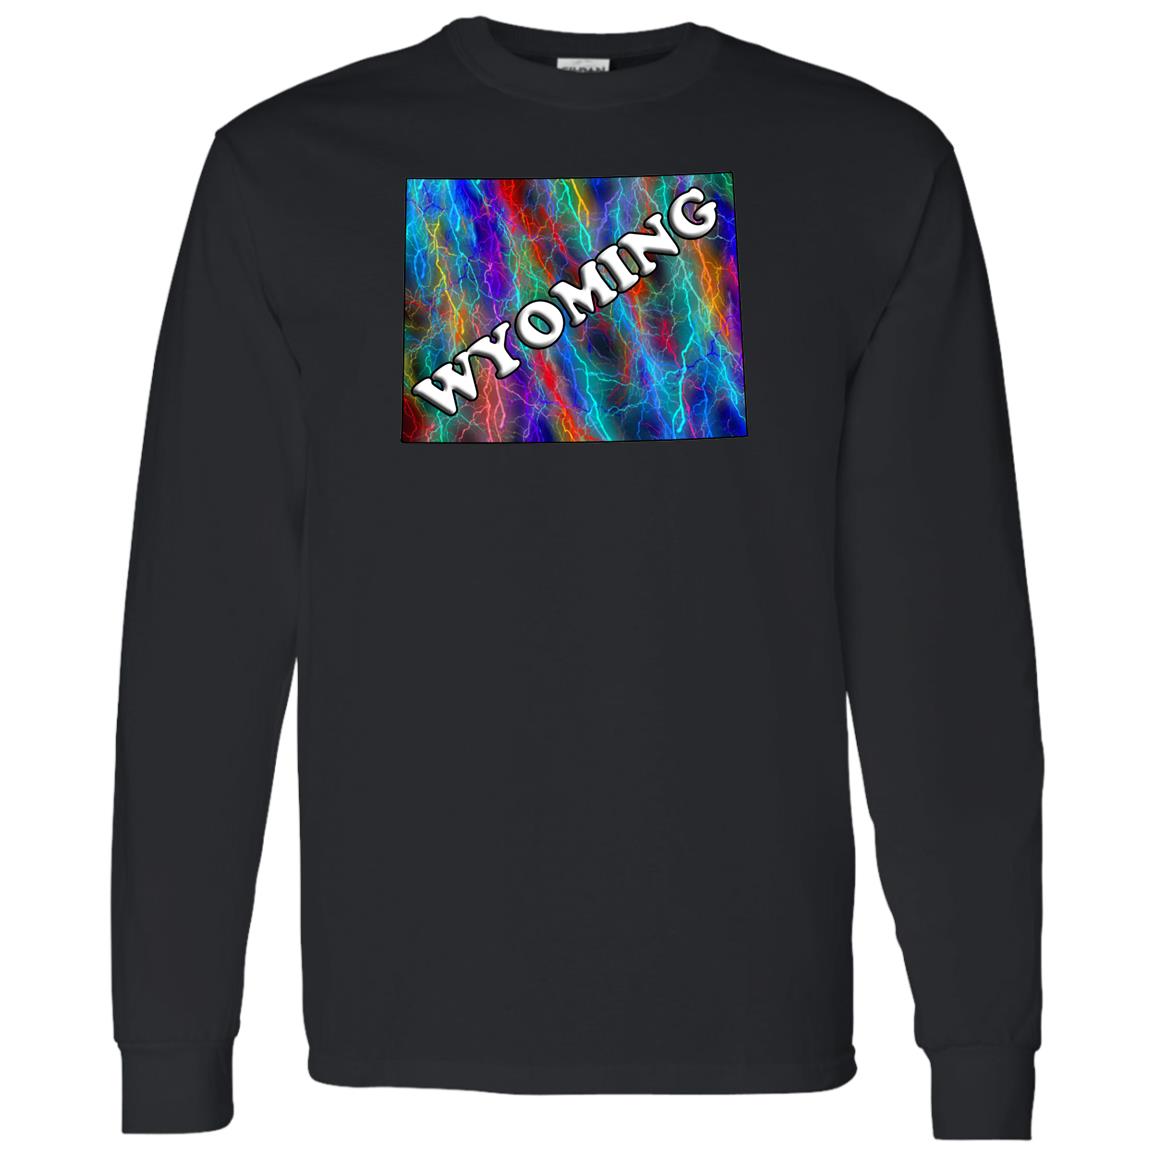 Wyoming LS T-Shirt